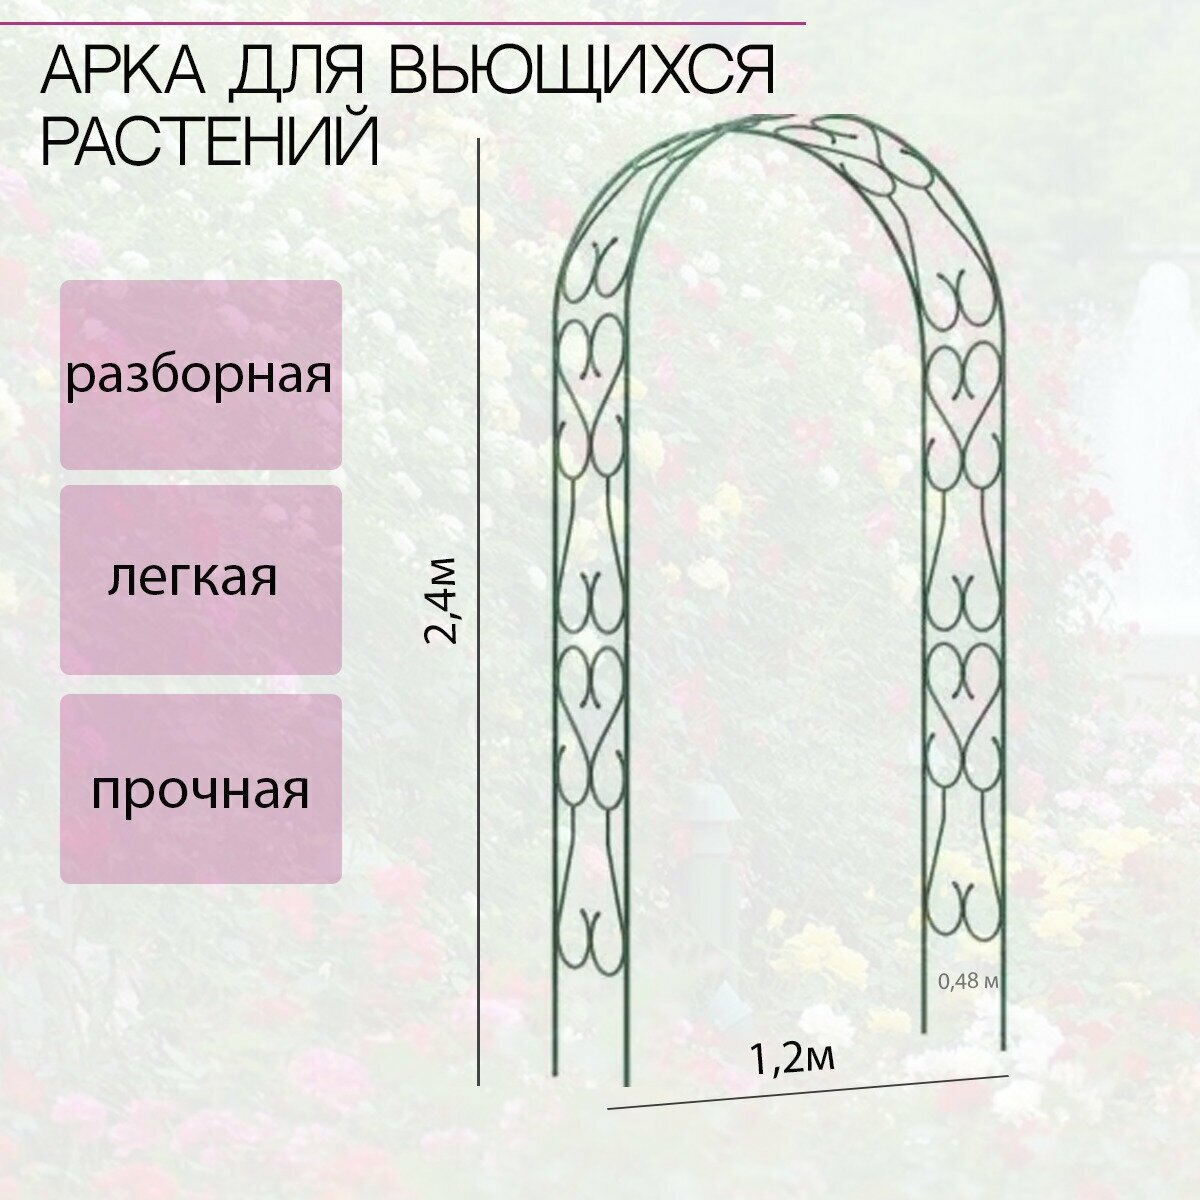 Арка широкая (разборная из 2х деталей) для вьющихся растений(ширина 1,2м, высота 2,4м, глубина 0,48м, труба 16мм) - фотография № 1